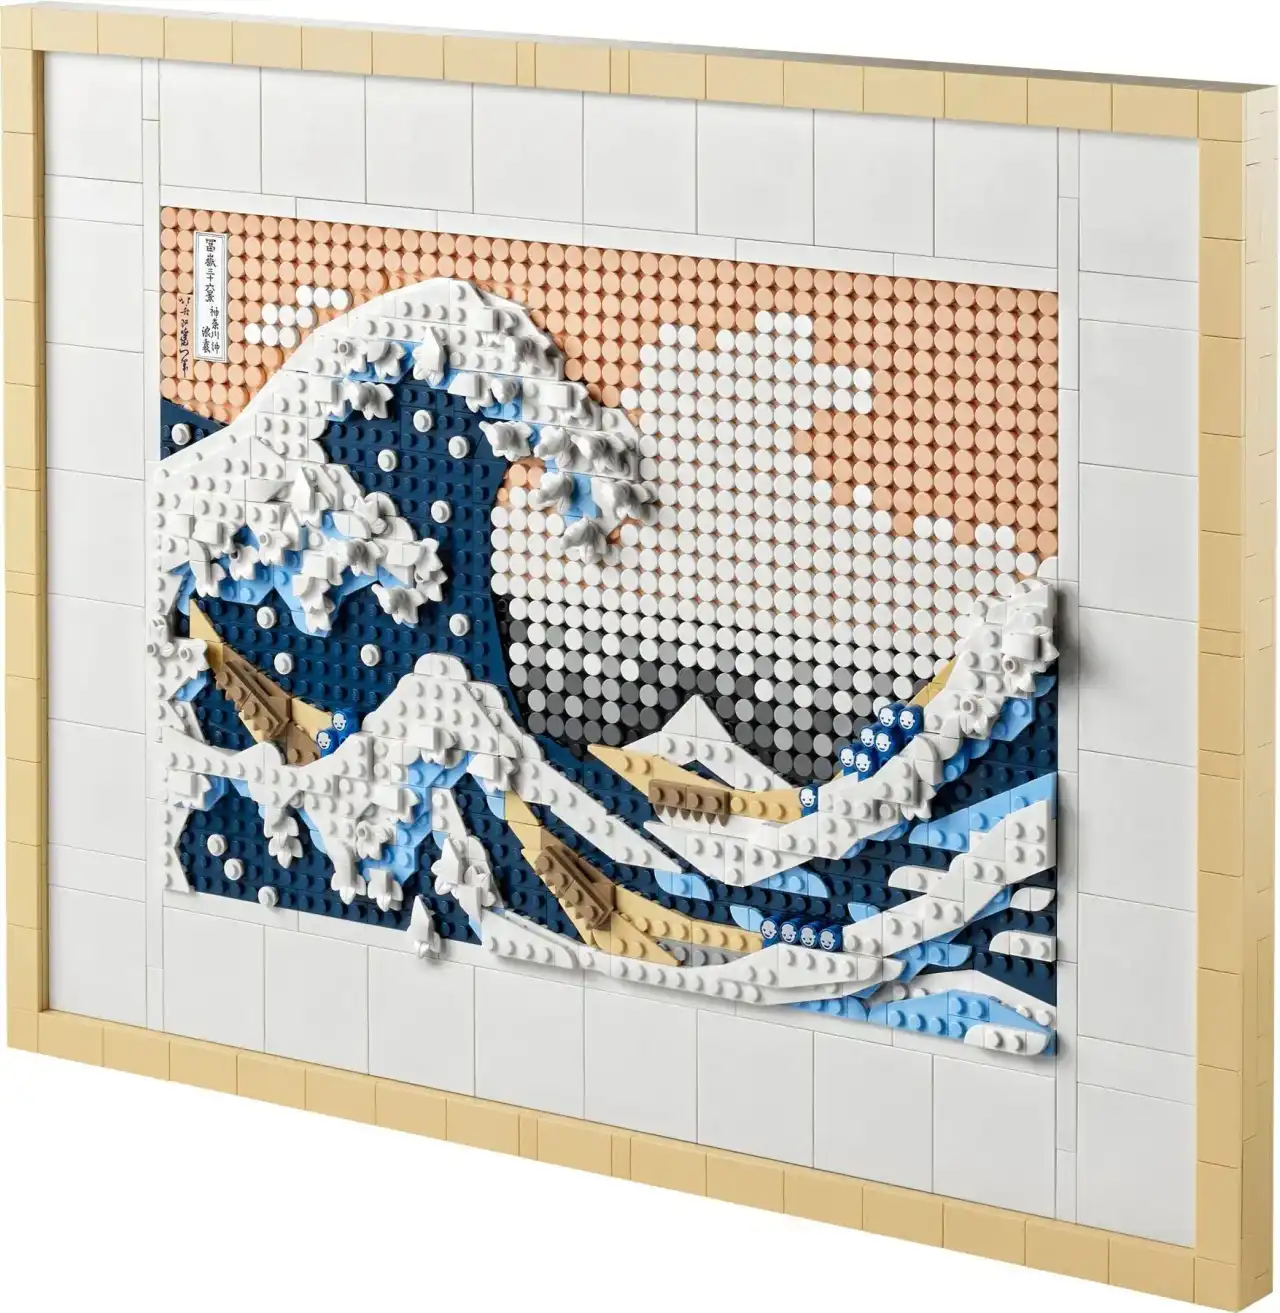 31208 - Hokusai - The Great Wave